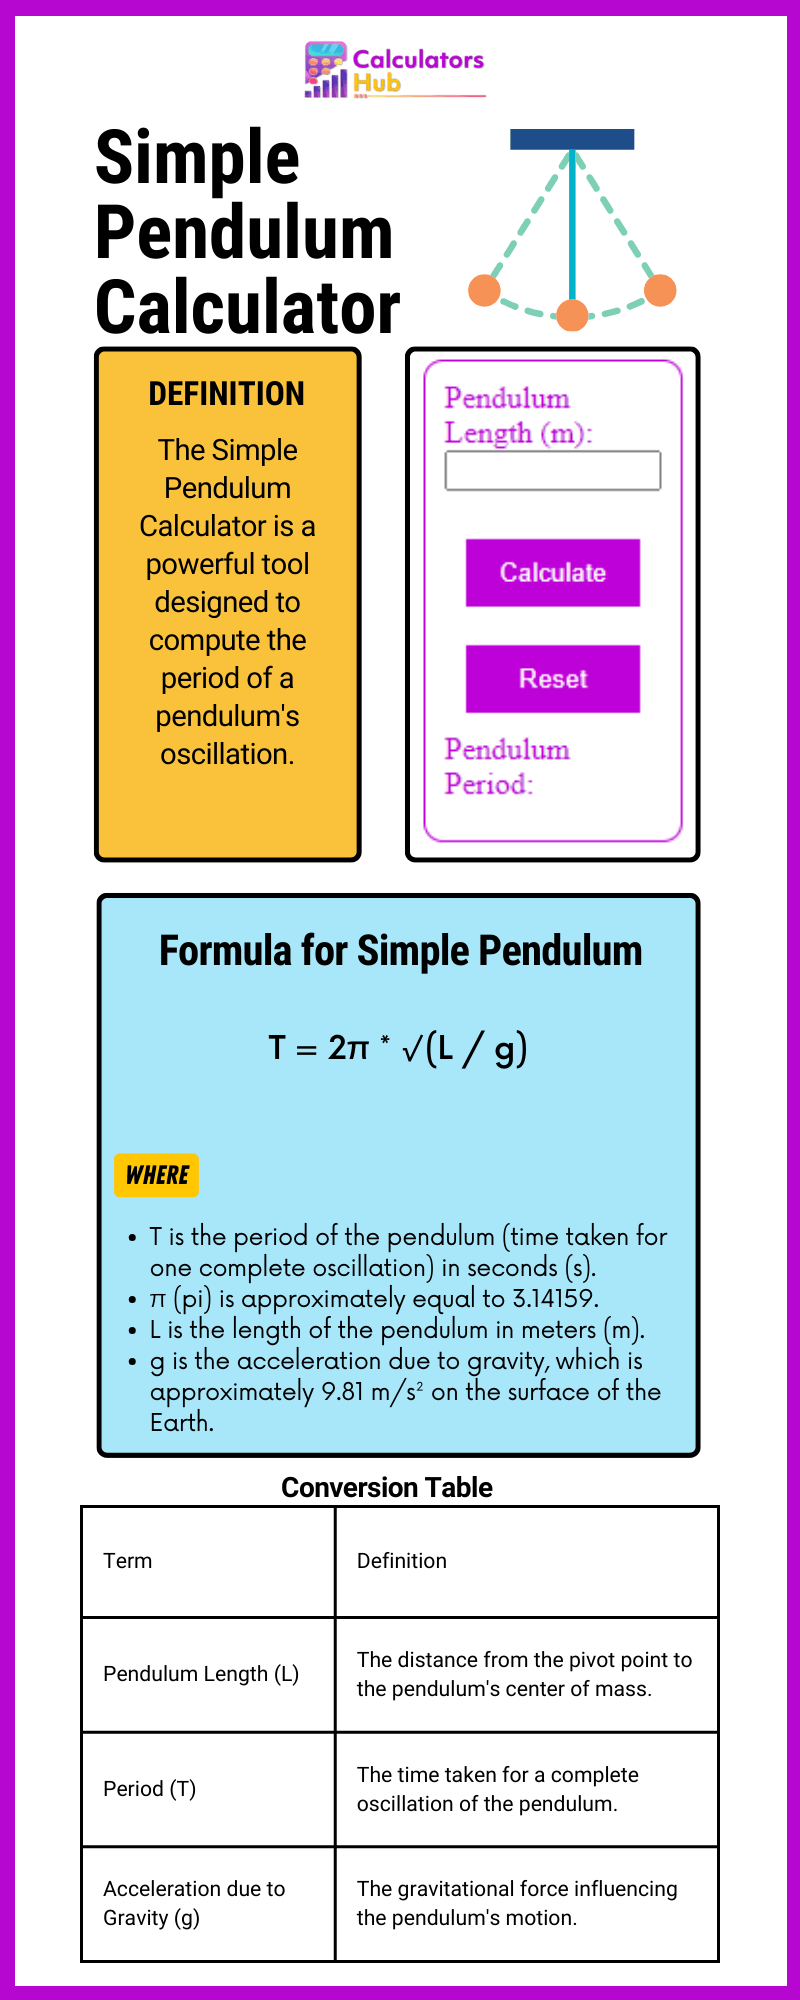 Simple Pendulum Calculator